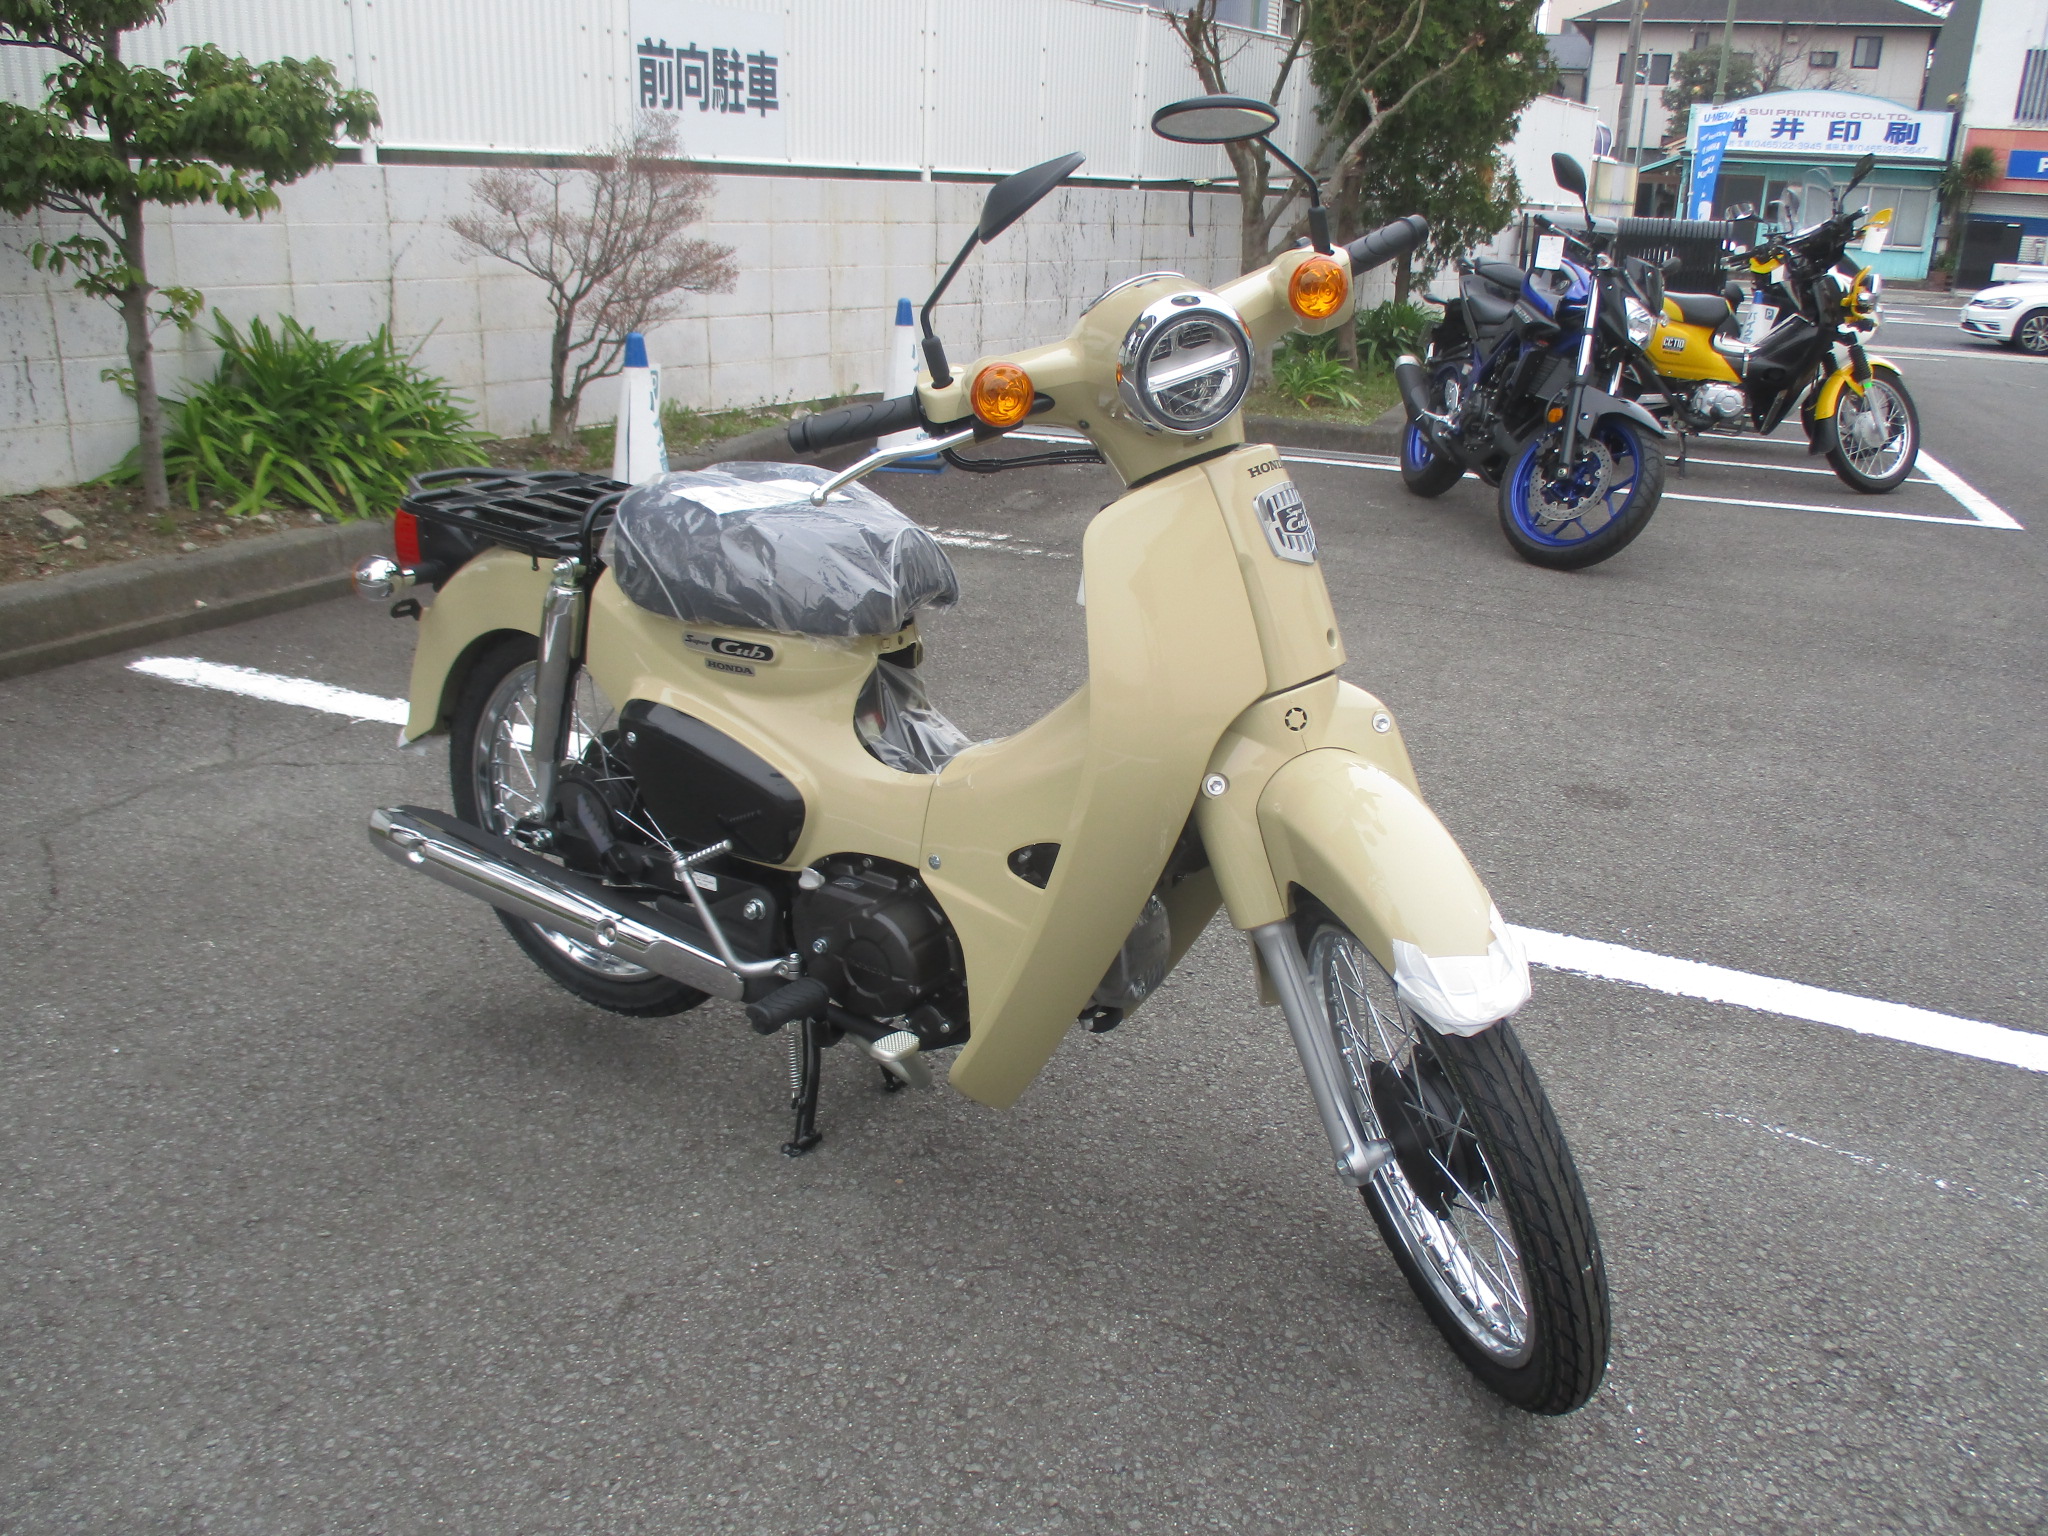 スーパーカブ110 ストリート入荷しました 最新情報 U Media ユーメディア 中古バイク 新車バイク探しの決定版 神奈川 東京でバイク探すならユーメディア